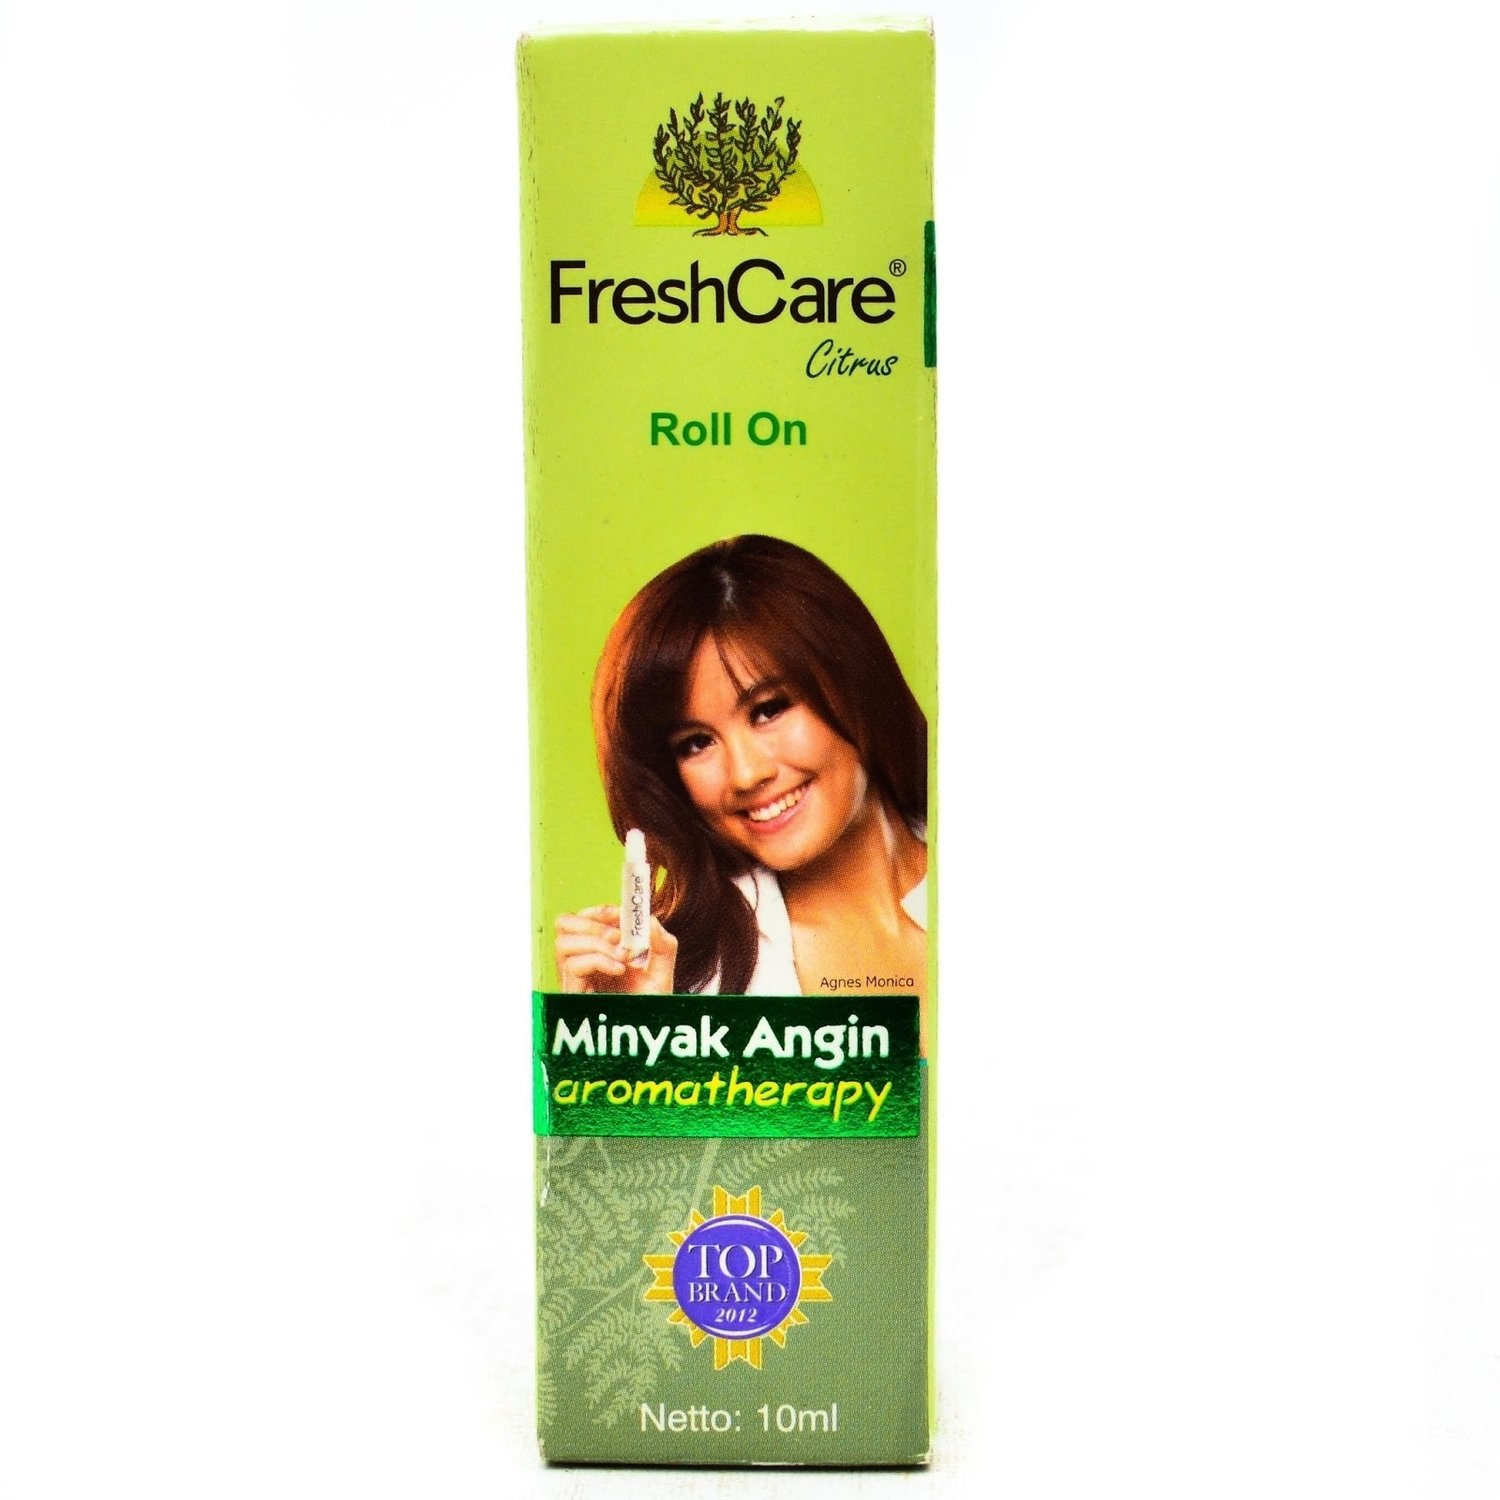 Freshcare / Fresh Care Citrus